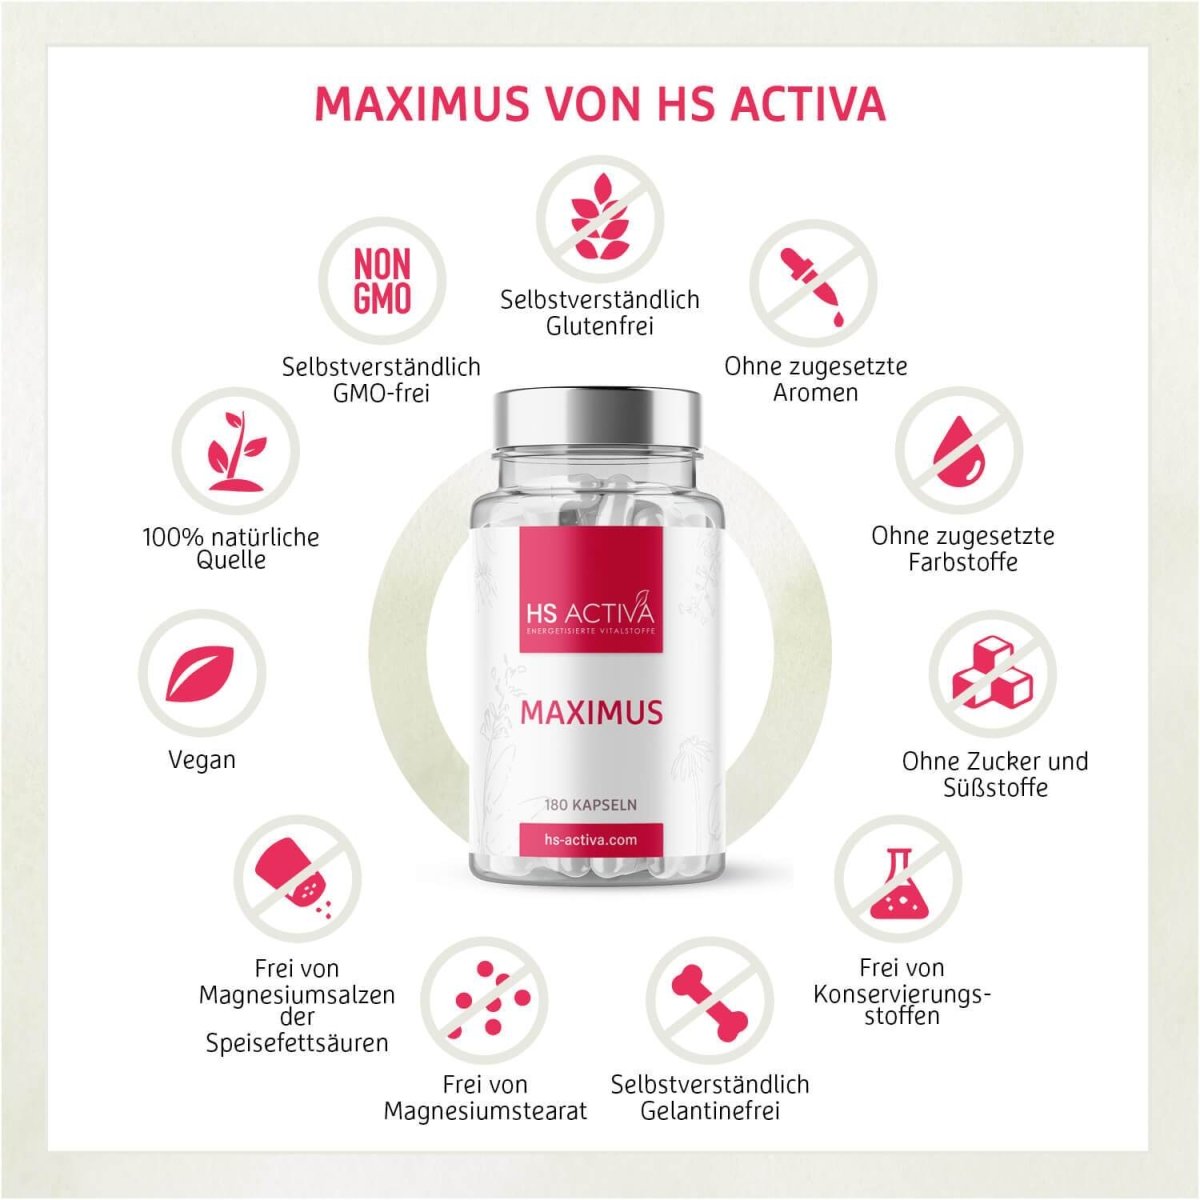 Maximus | Natürliches Potenzmittel (Ohne Chemie) | Libido nachhaltig steigern - HS Activa